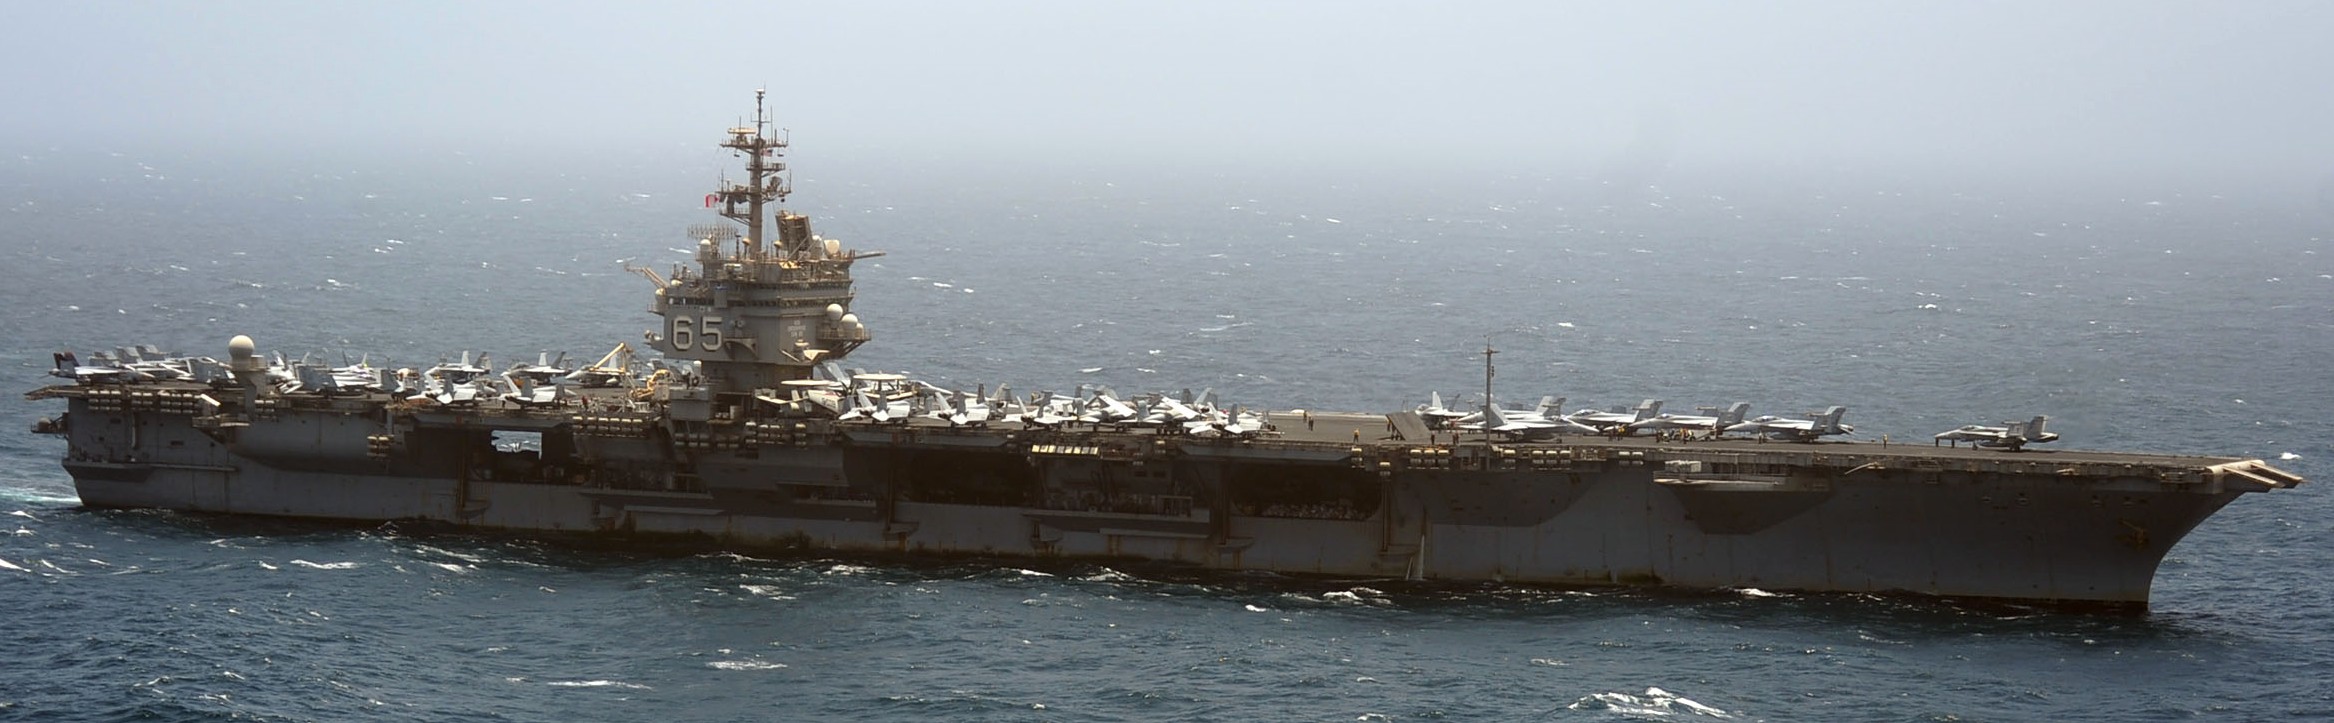 cvn-65 uss enterprise aircraft carrier air wing cvw-1 us navy arabian sea 2012 36